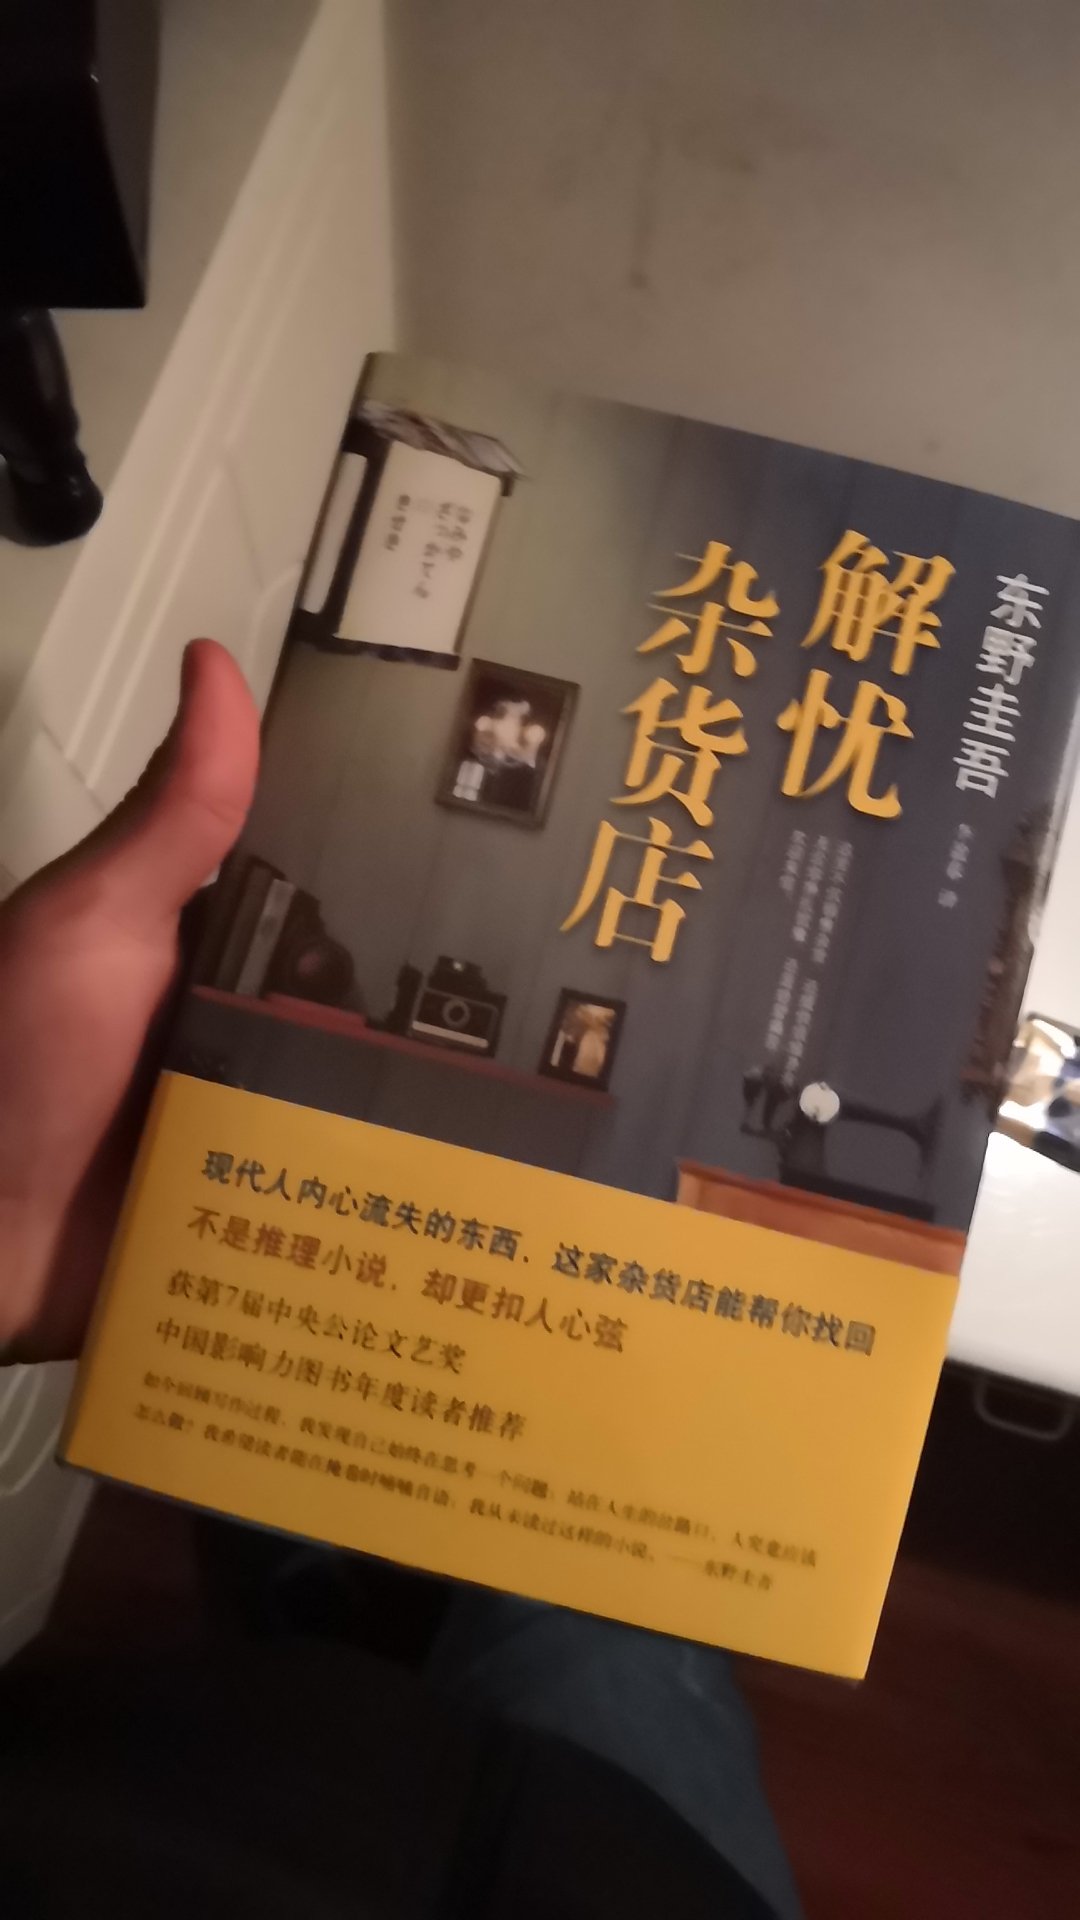 这本书是正版的，而且内容非常的好看，东野圭唔的书我很喜欢